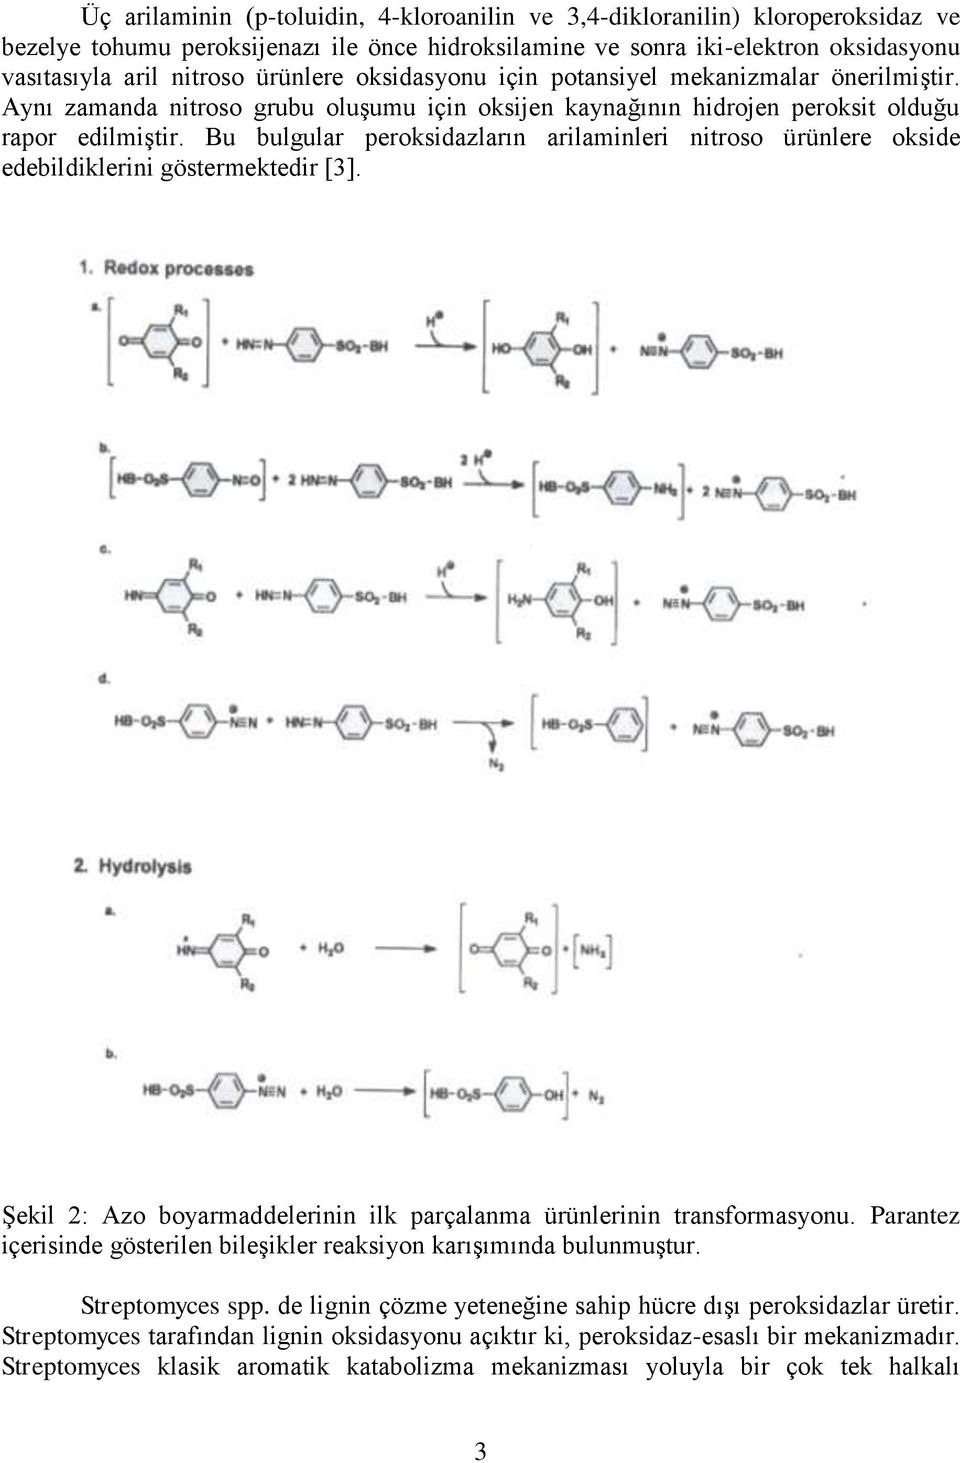 Bu bulgular peroksidazların arilaminleri nitroso ürünlere okside edebildiklerini göstermektedir [3]. Şekil 2: Azo boyarmaddelerinin ilk parçalanma ürünlerinin transformasyonu.